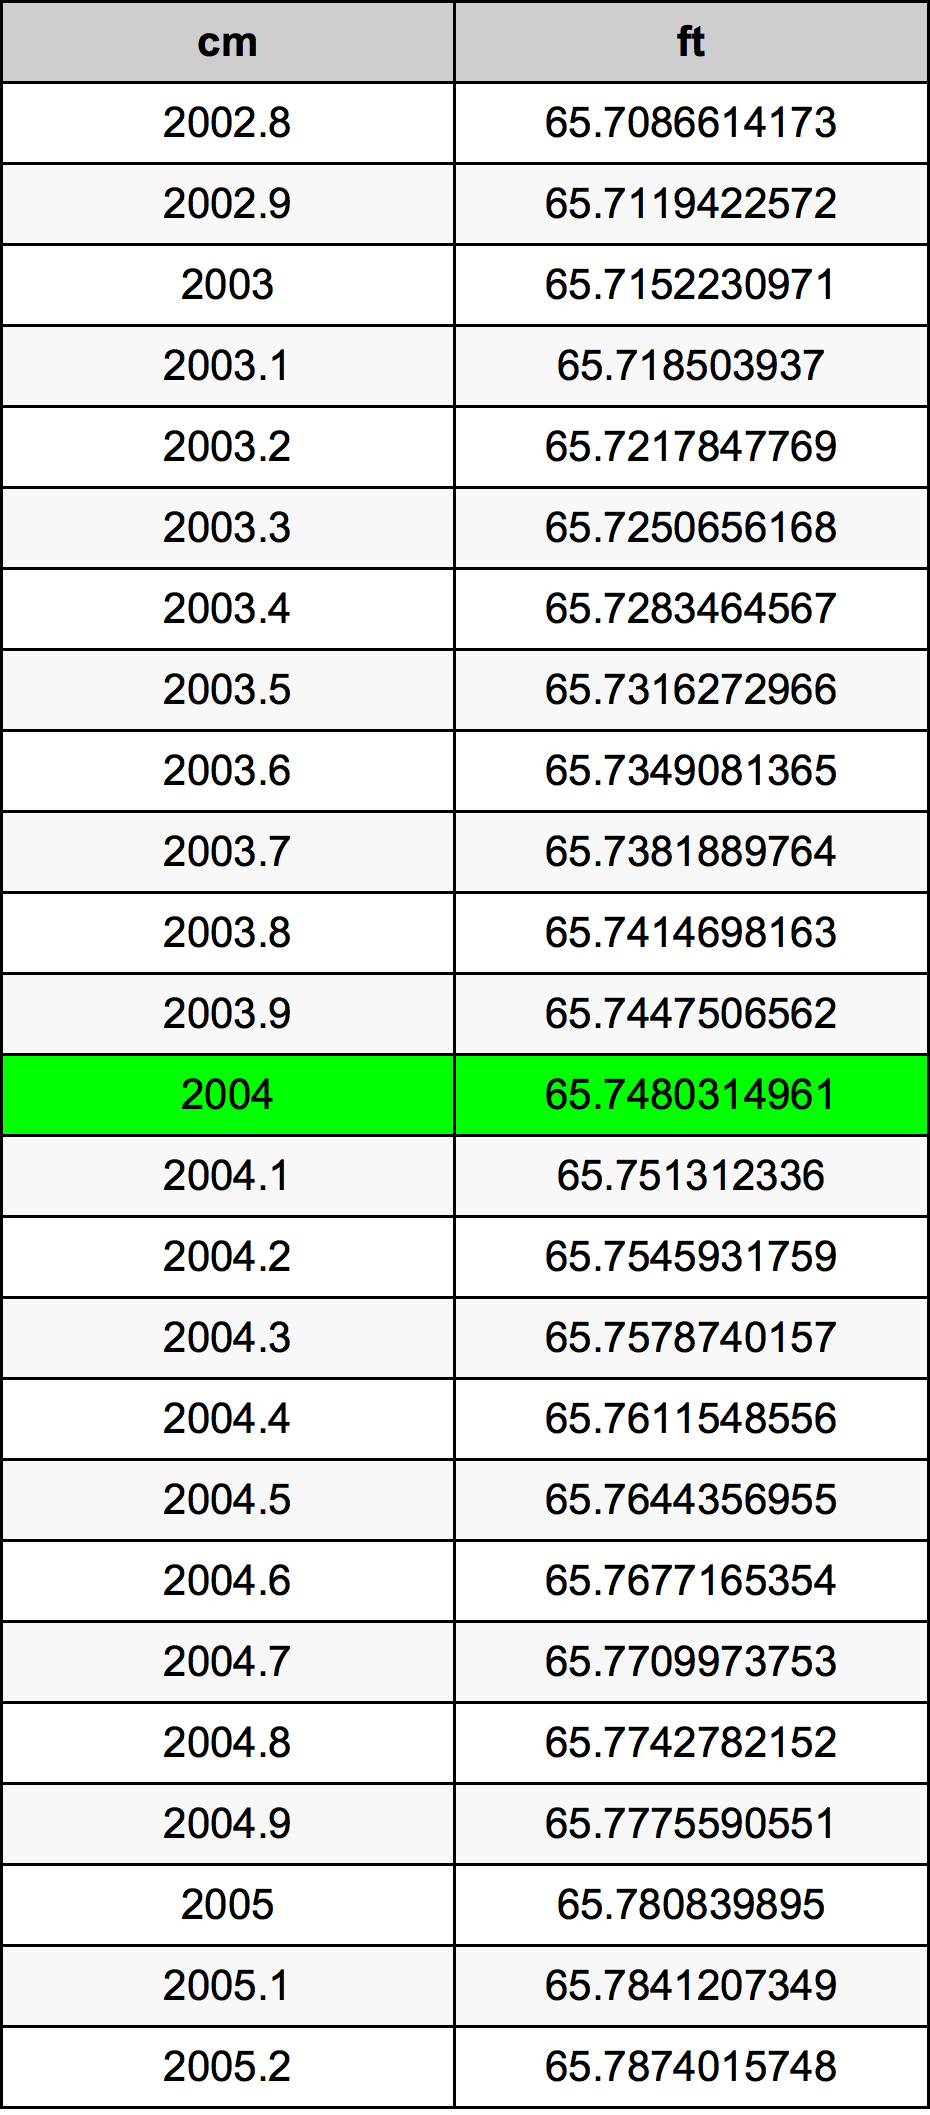 2004 Centimeter omregningstabel